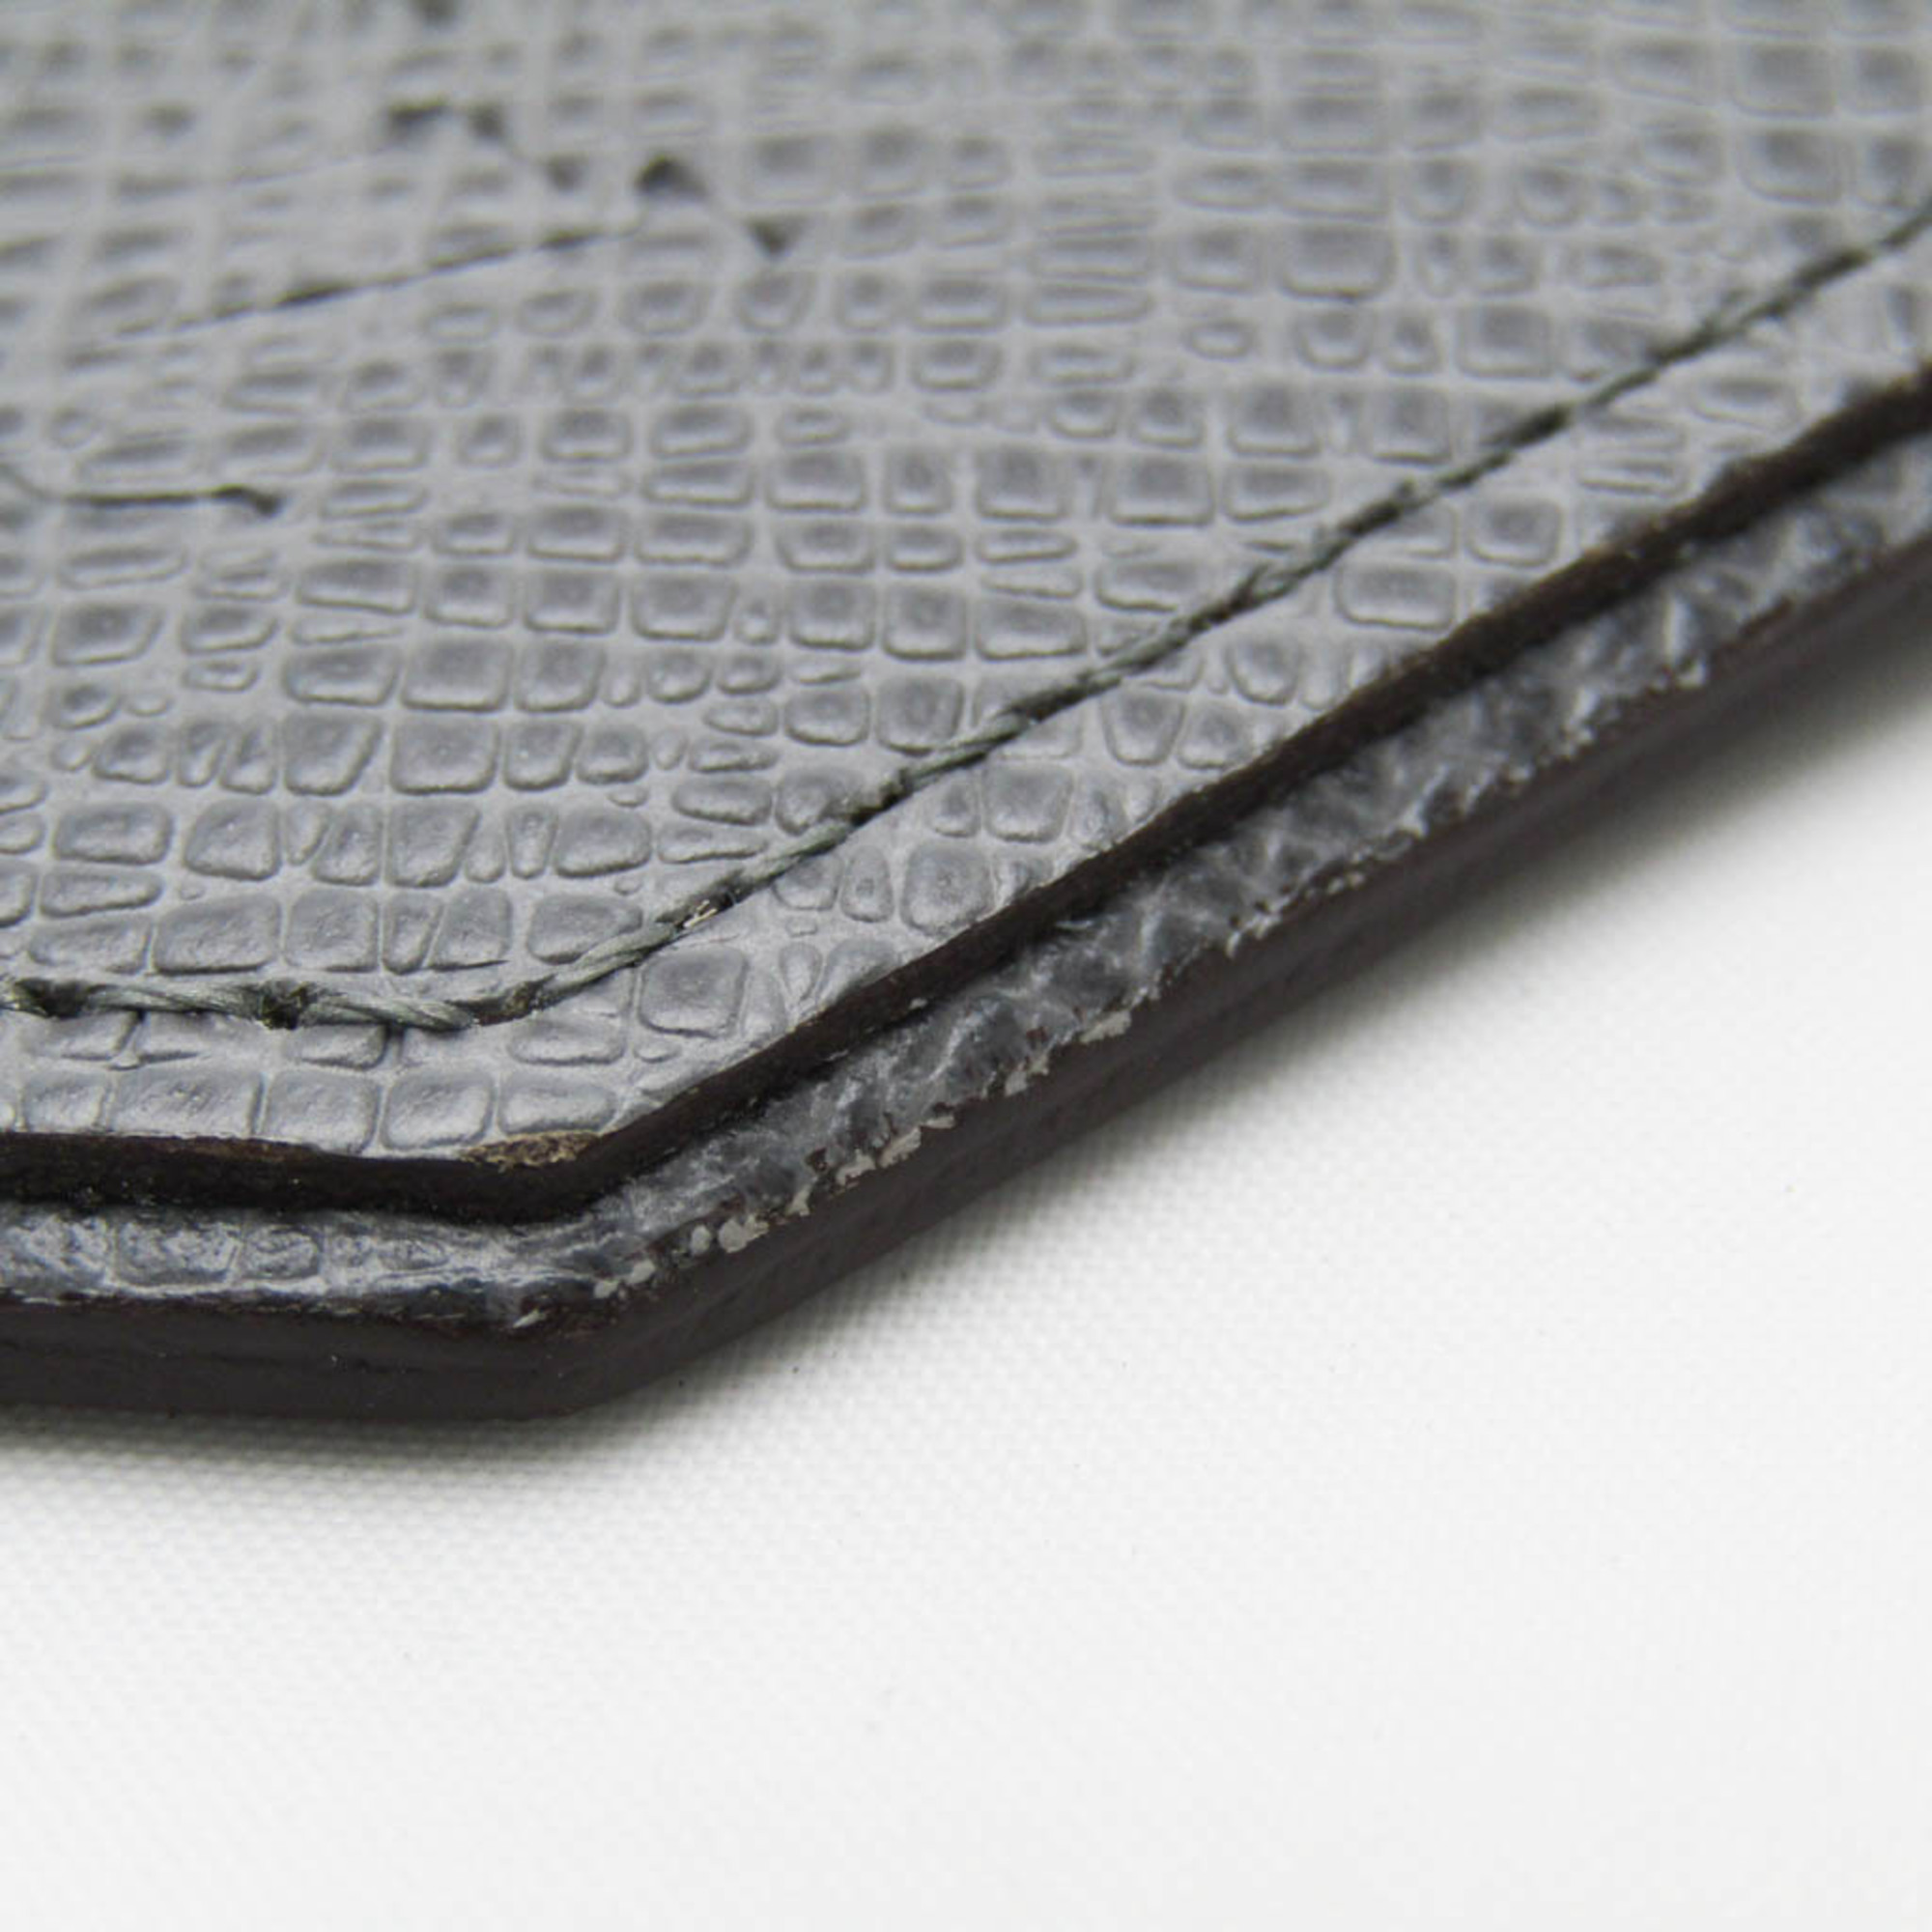 Louis Vuitton Taiga Pochette Cle M32603 Men's Taiga Leather Coin Purse/coin Case Glacier